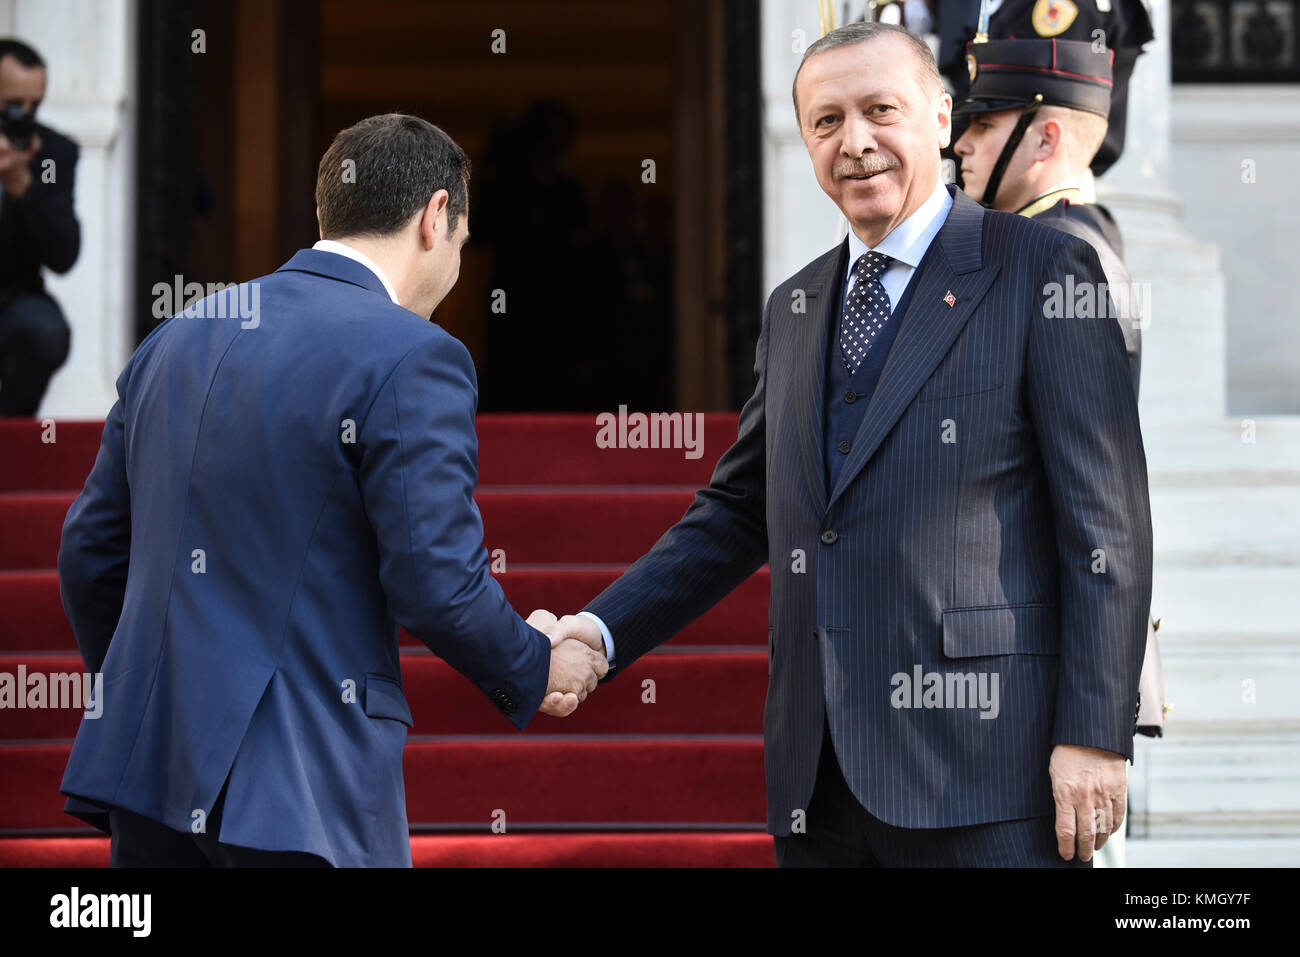 Athènes, Grèce - décembre 7, 2017 : le premier ministre de la Grèce, Alexis Tsipras (L) accueille le président de la Turquie, Recep Tayyip Erdogan (R) à l'Maximos Mansion à Athènes, Grèce Crédit : VASILIS VERVERIDIS/Alamy Live News Banque D'Images